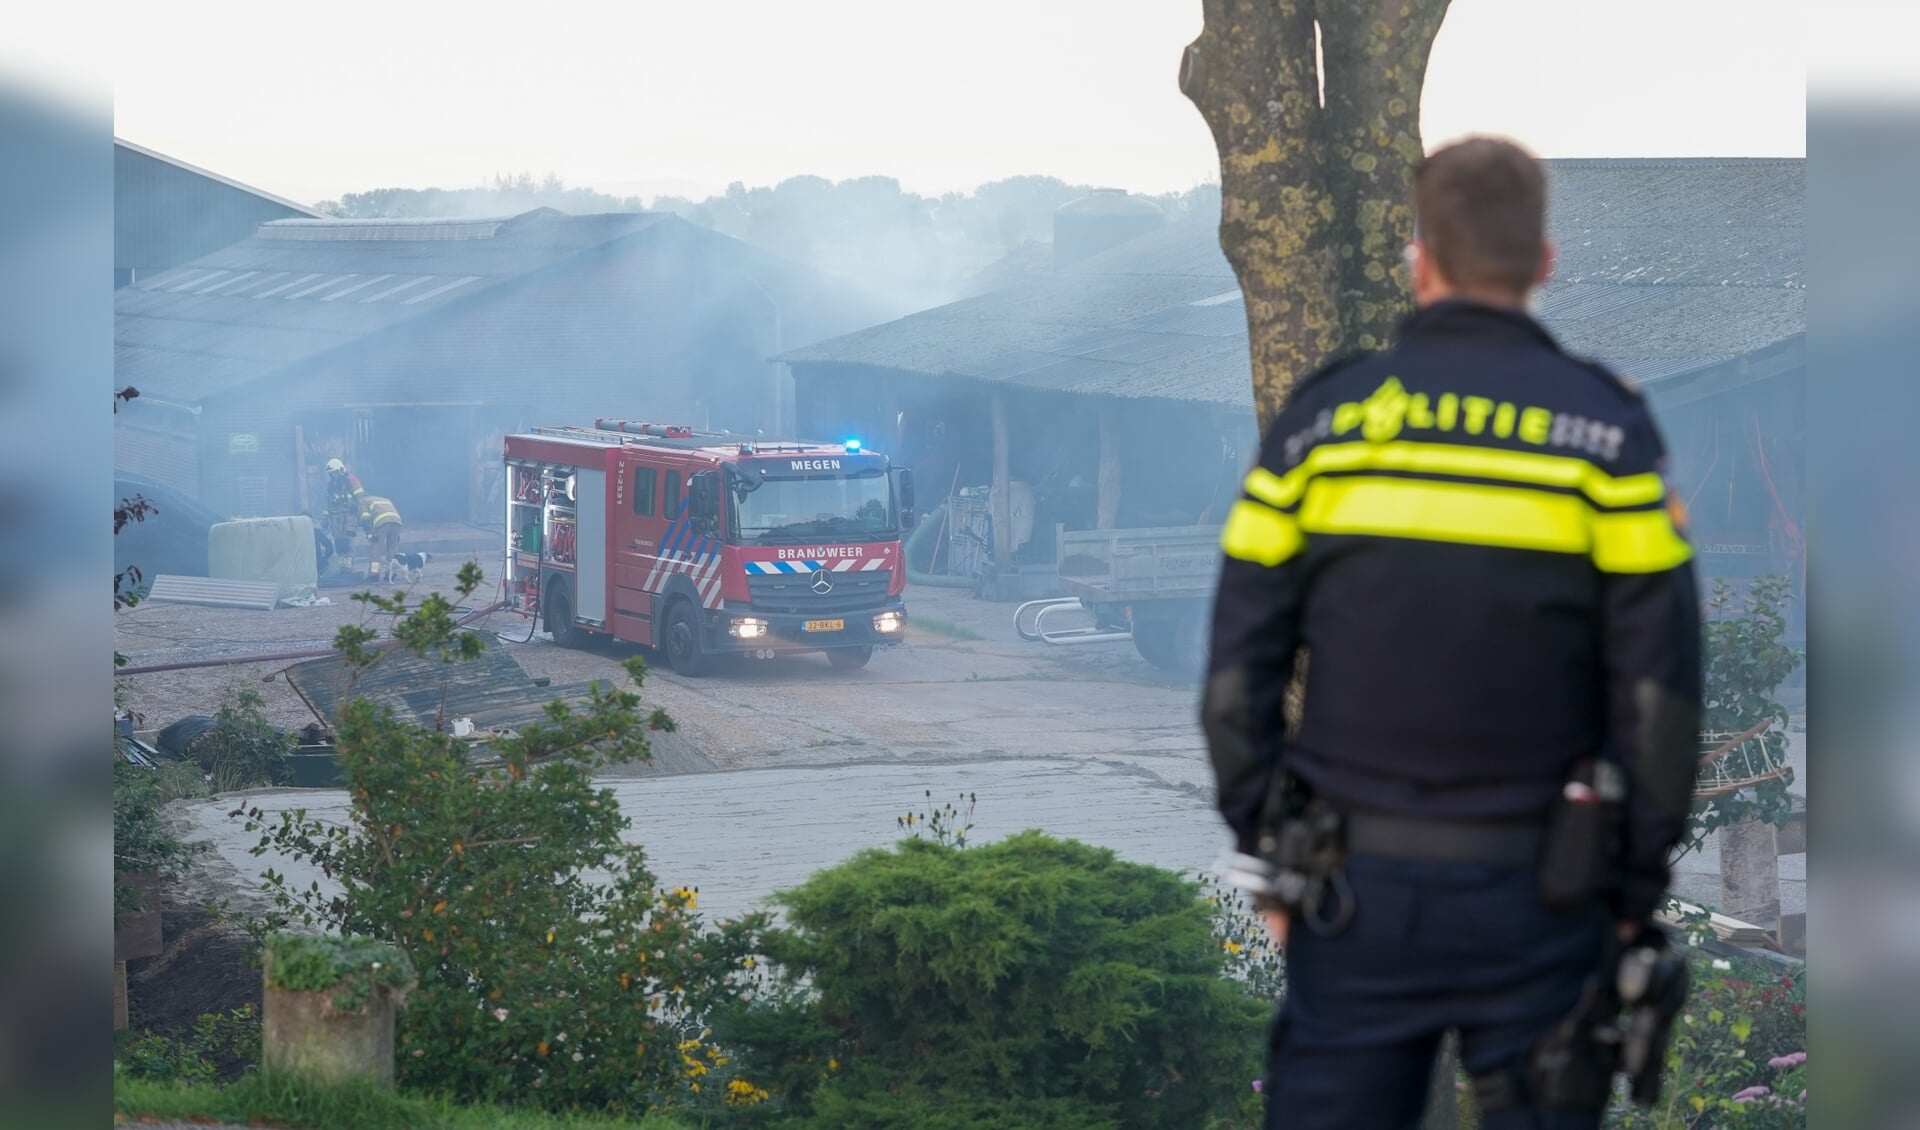 Flinke rookontwikkeling bij brand in schuur Oijen. (Foto: Gabor Heeres, Foto Mallo)